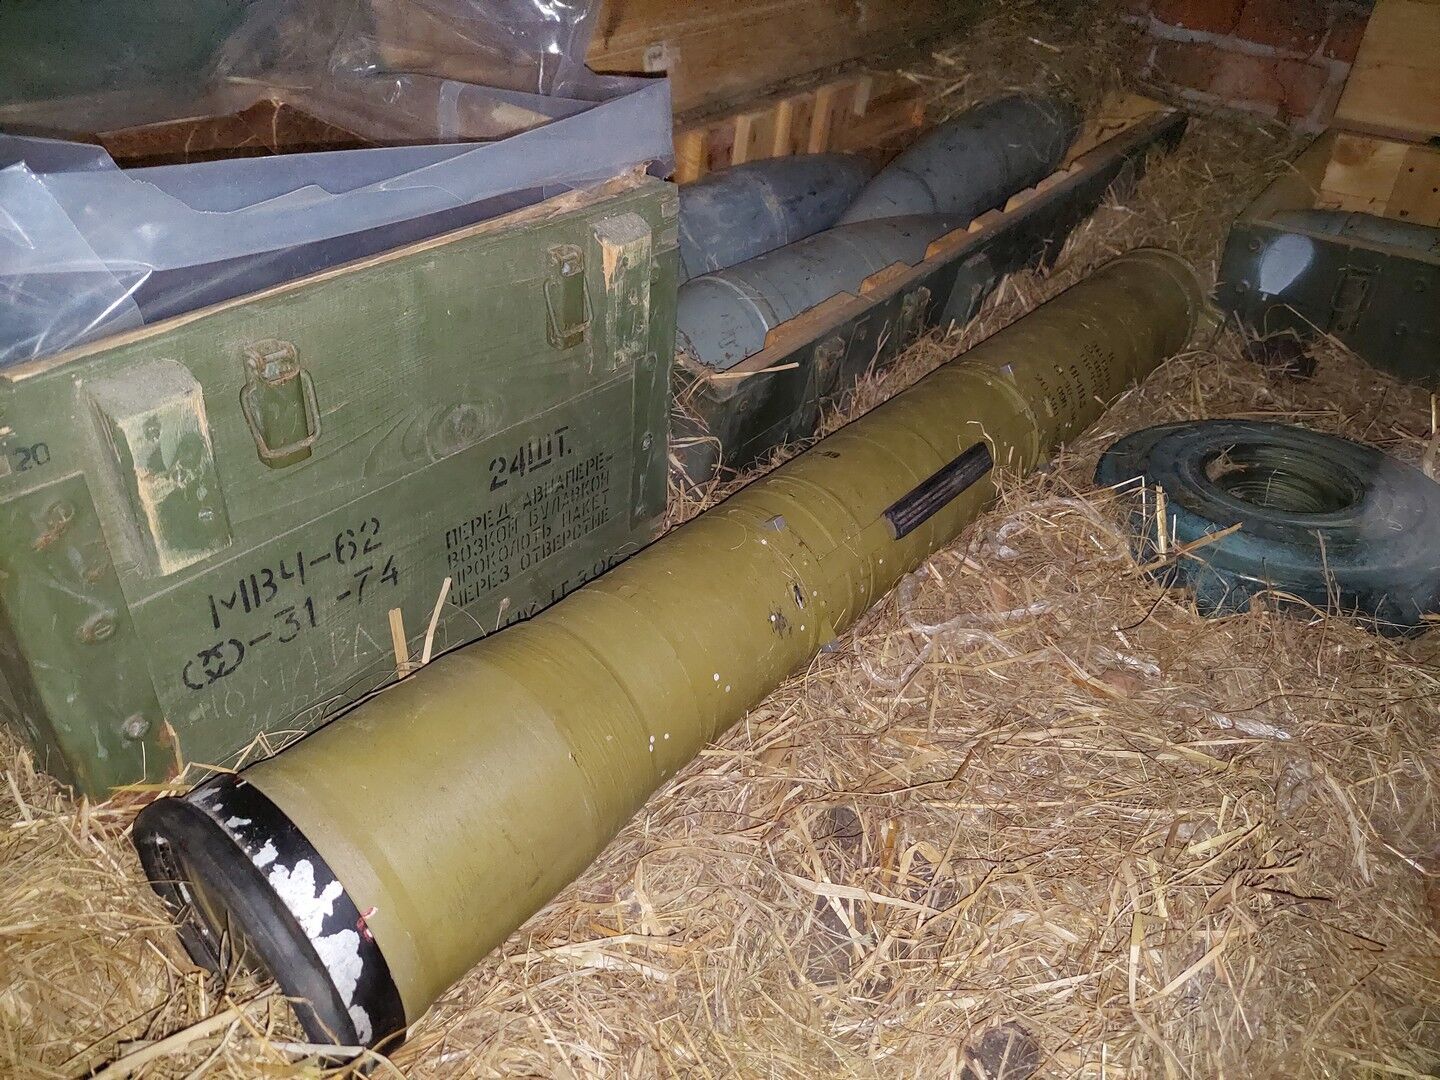 Обнаружены два ящика с боеприпасами и оружием россиян.